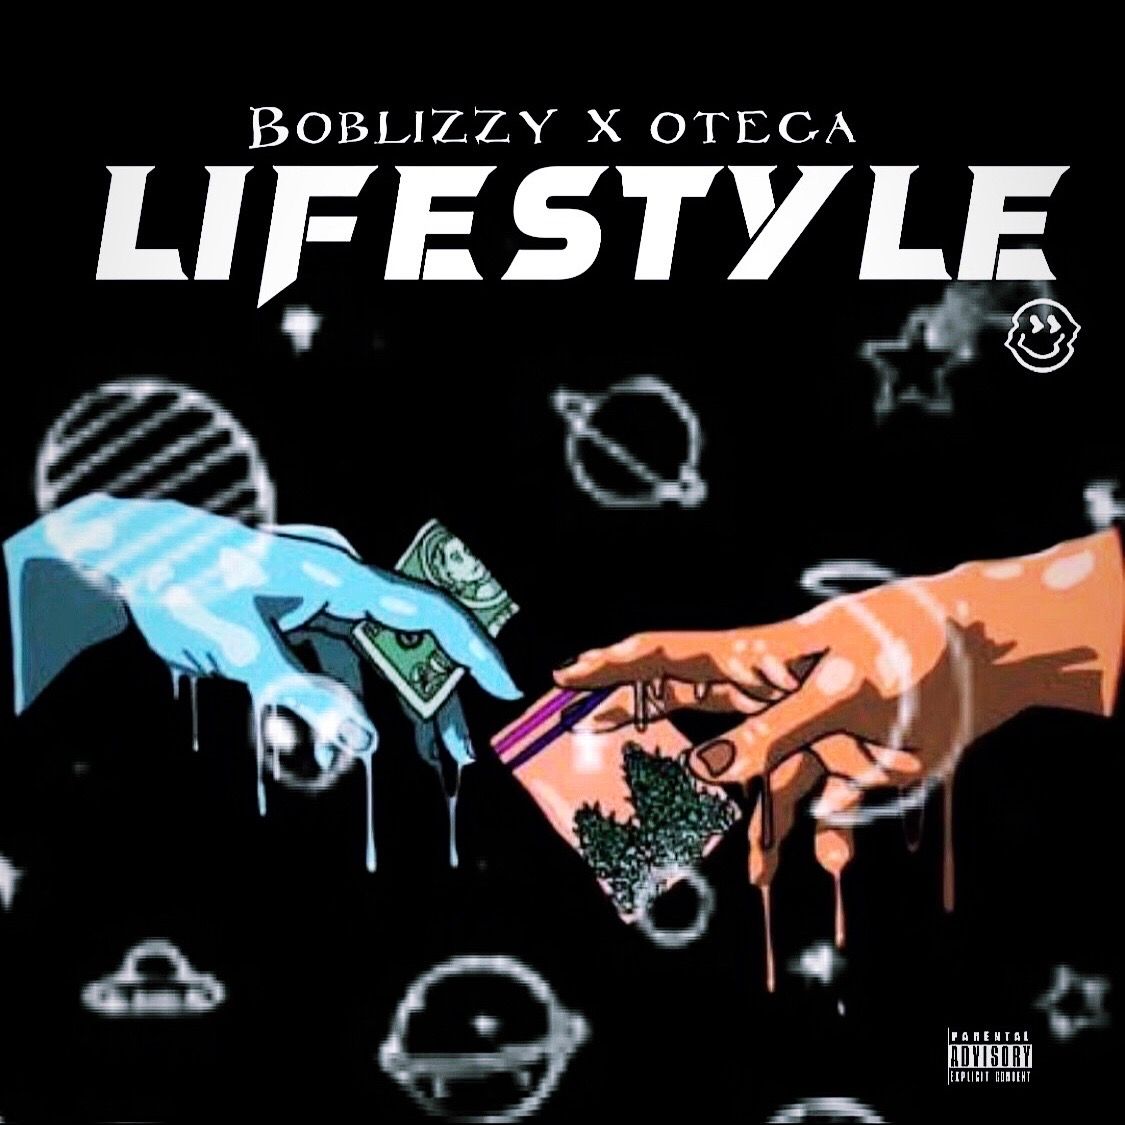 Boblizzy - Lifestyle Ft. Otega